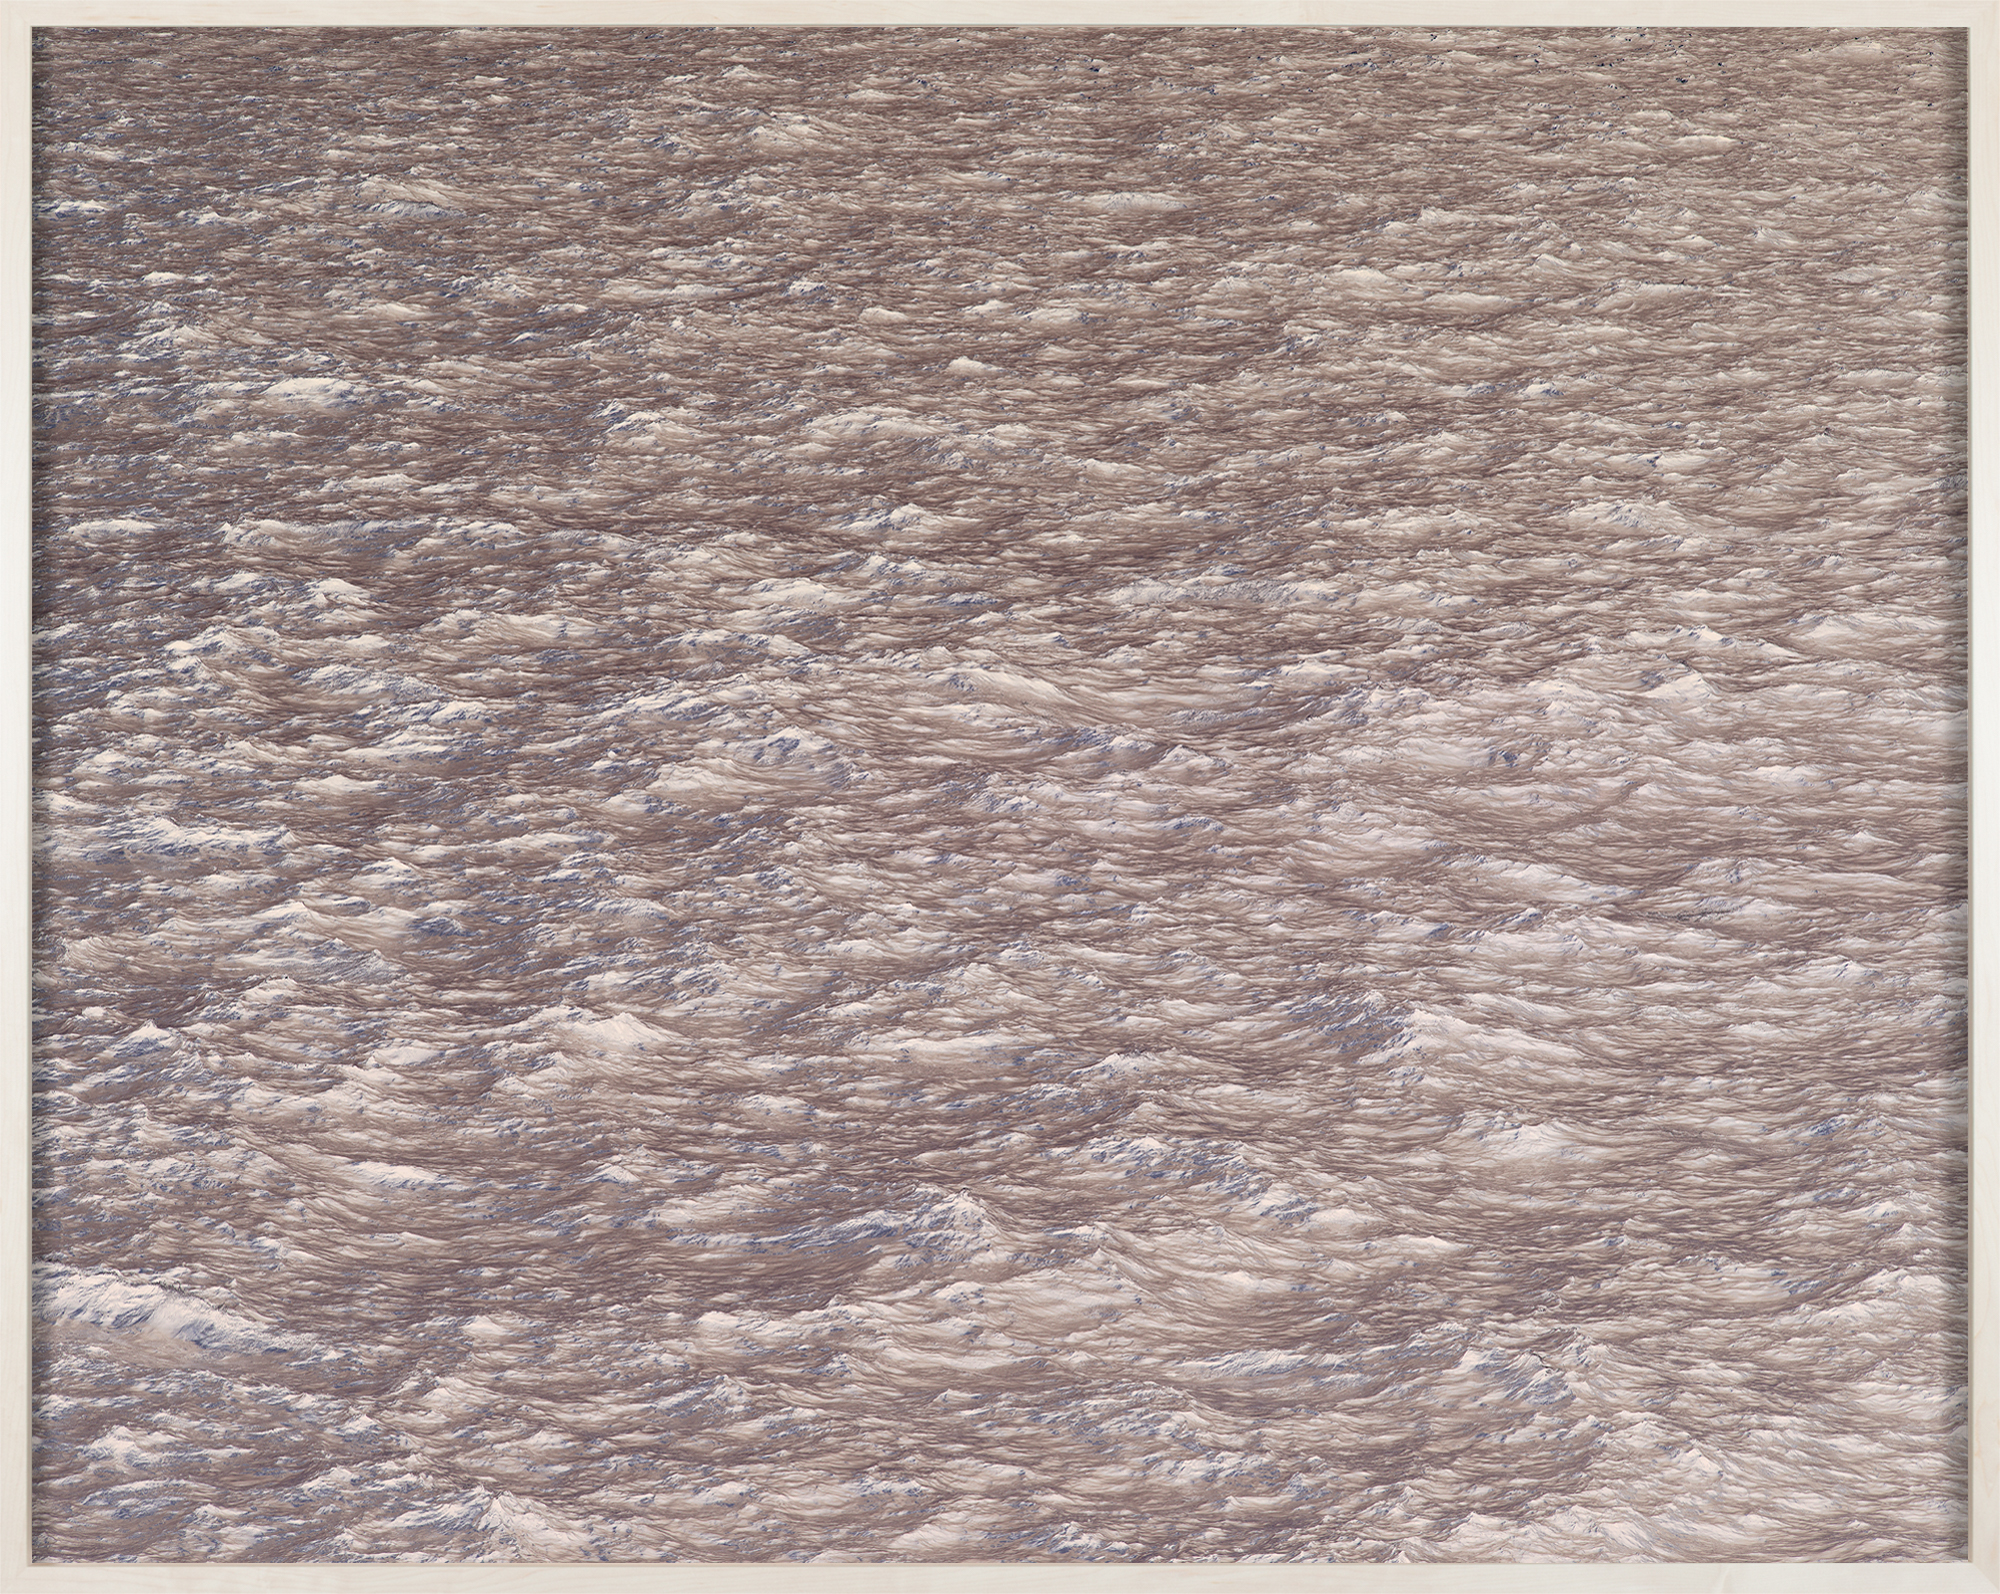 Color reversal image of waves framed in a light beige frame